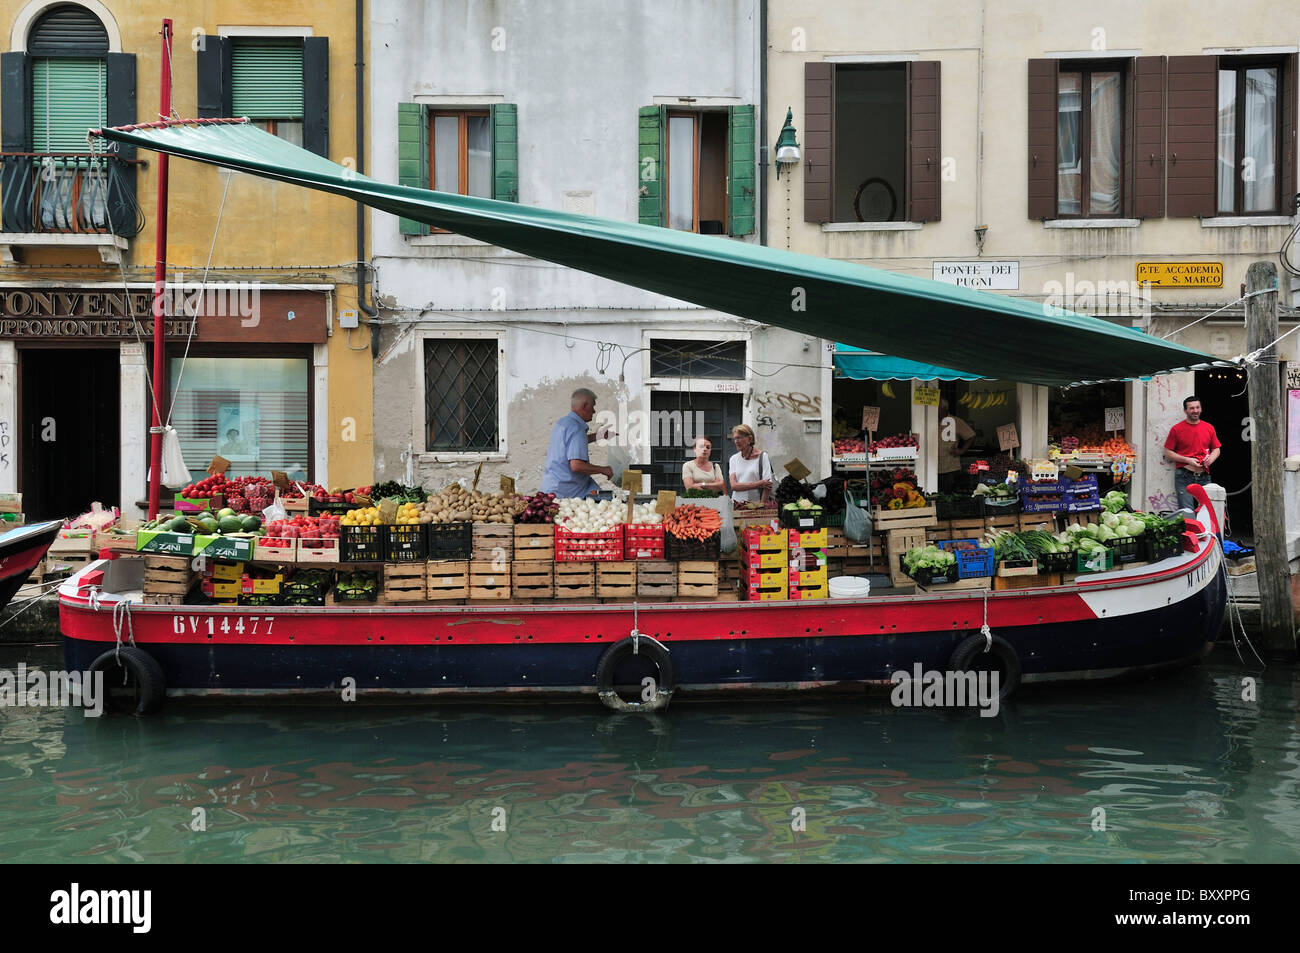 Venise. L'Italie. Fruits & Légumes Barge sur le Rio San Barnaba / Piazza San Barnaba. Banque D'Images